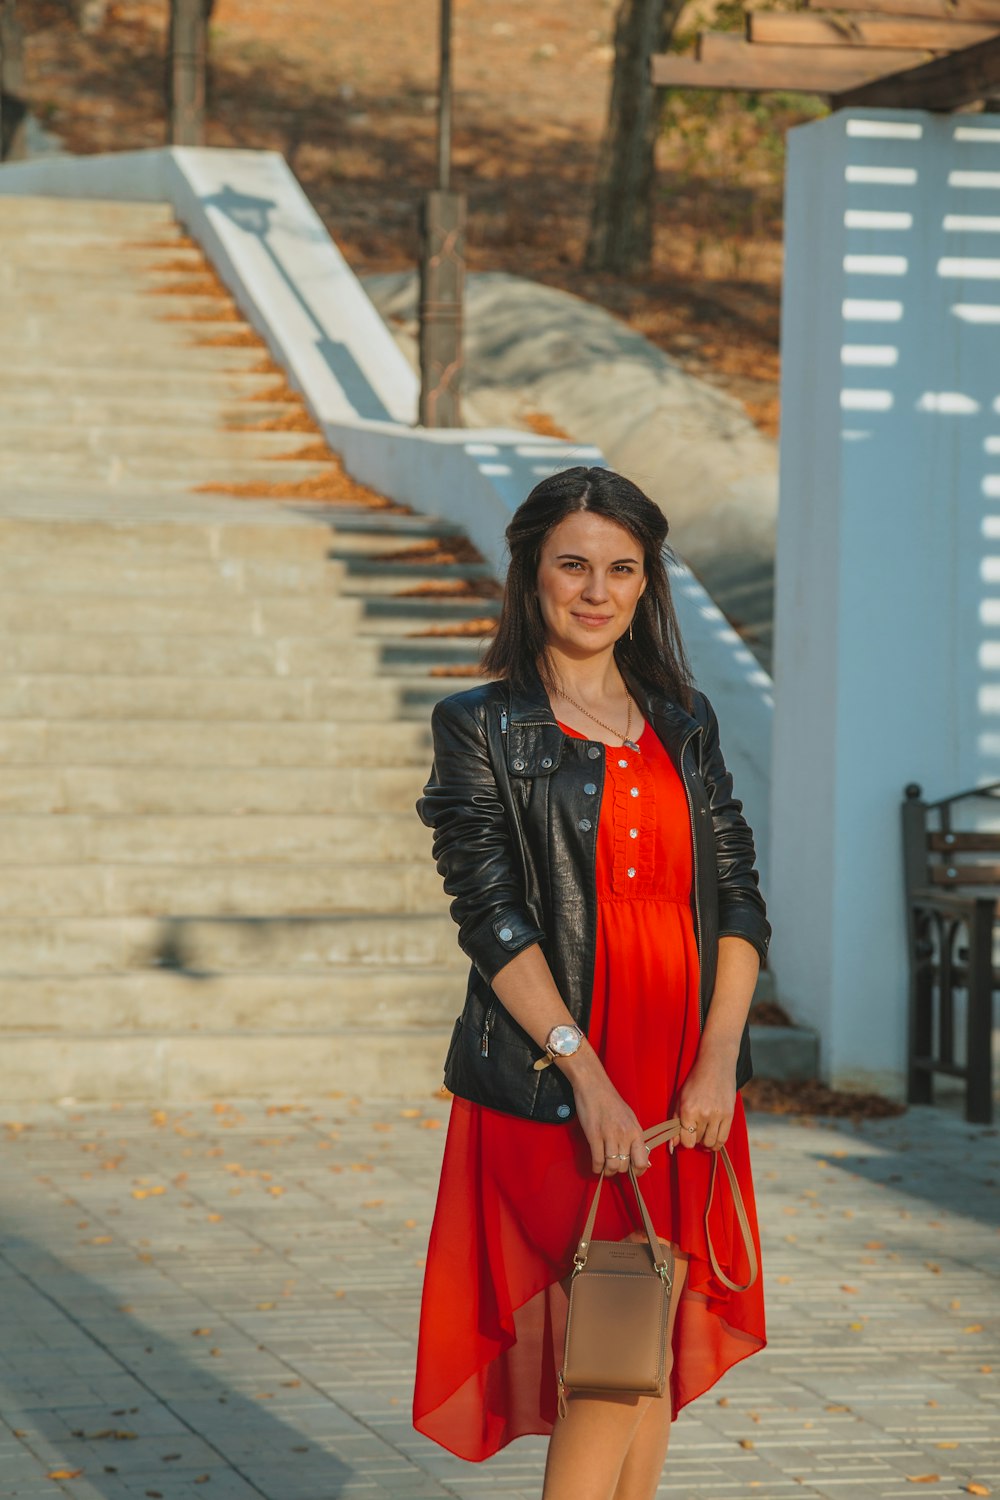 Foto mujer con chaqueta de cuero y vestido rojo parada la acera durante el día – Rusia gratis en Unsplash